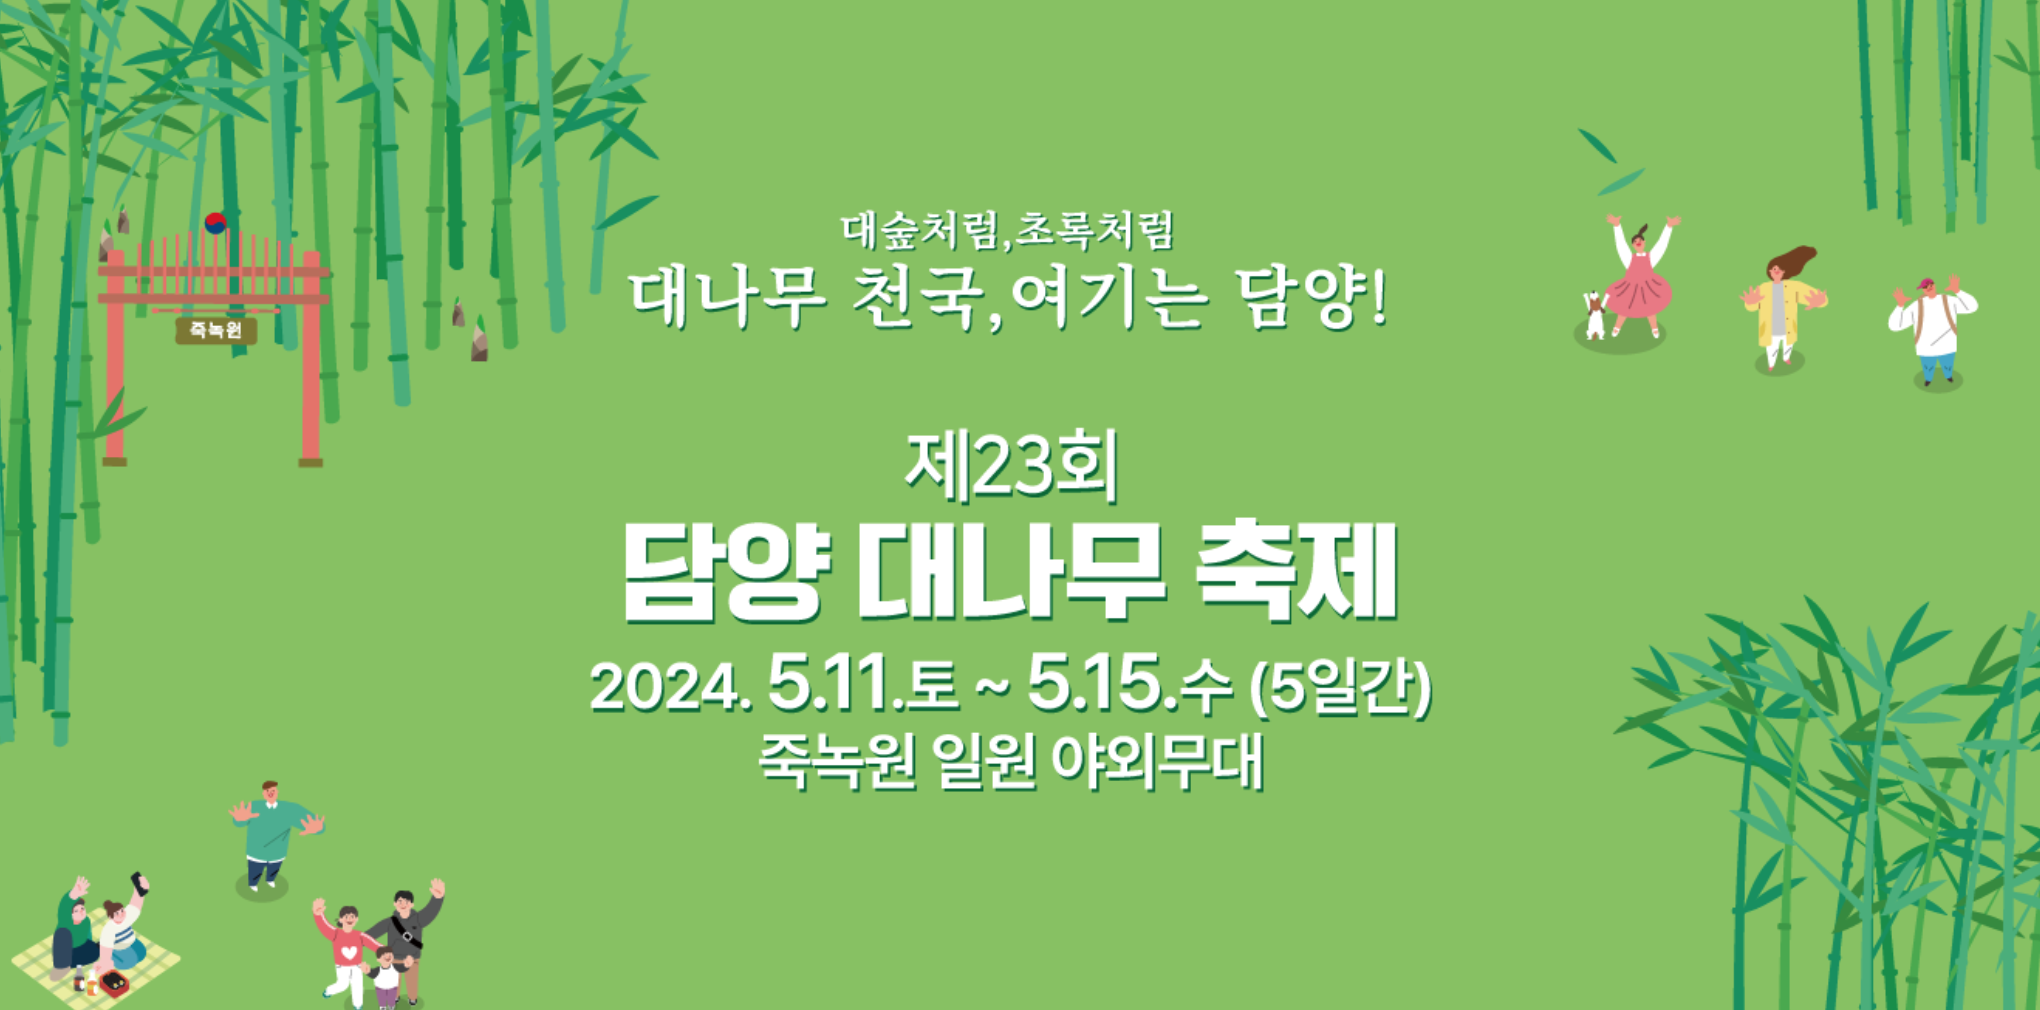 🎋 제23회 담양 대나무축제, 죽녹원 최초 야간 개장까지!?